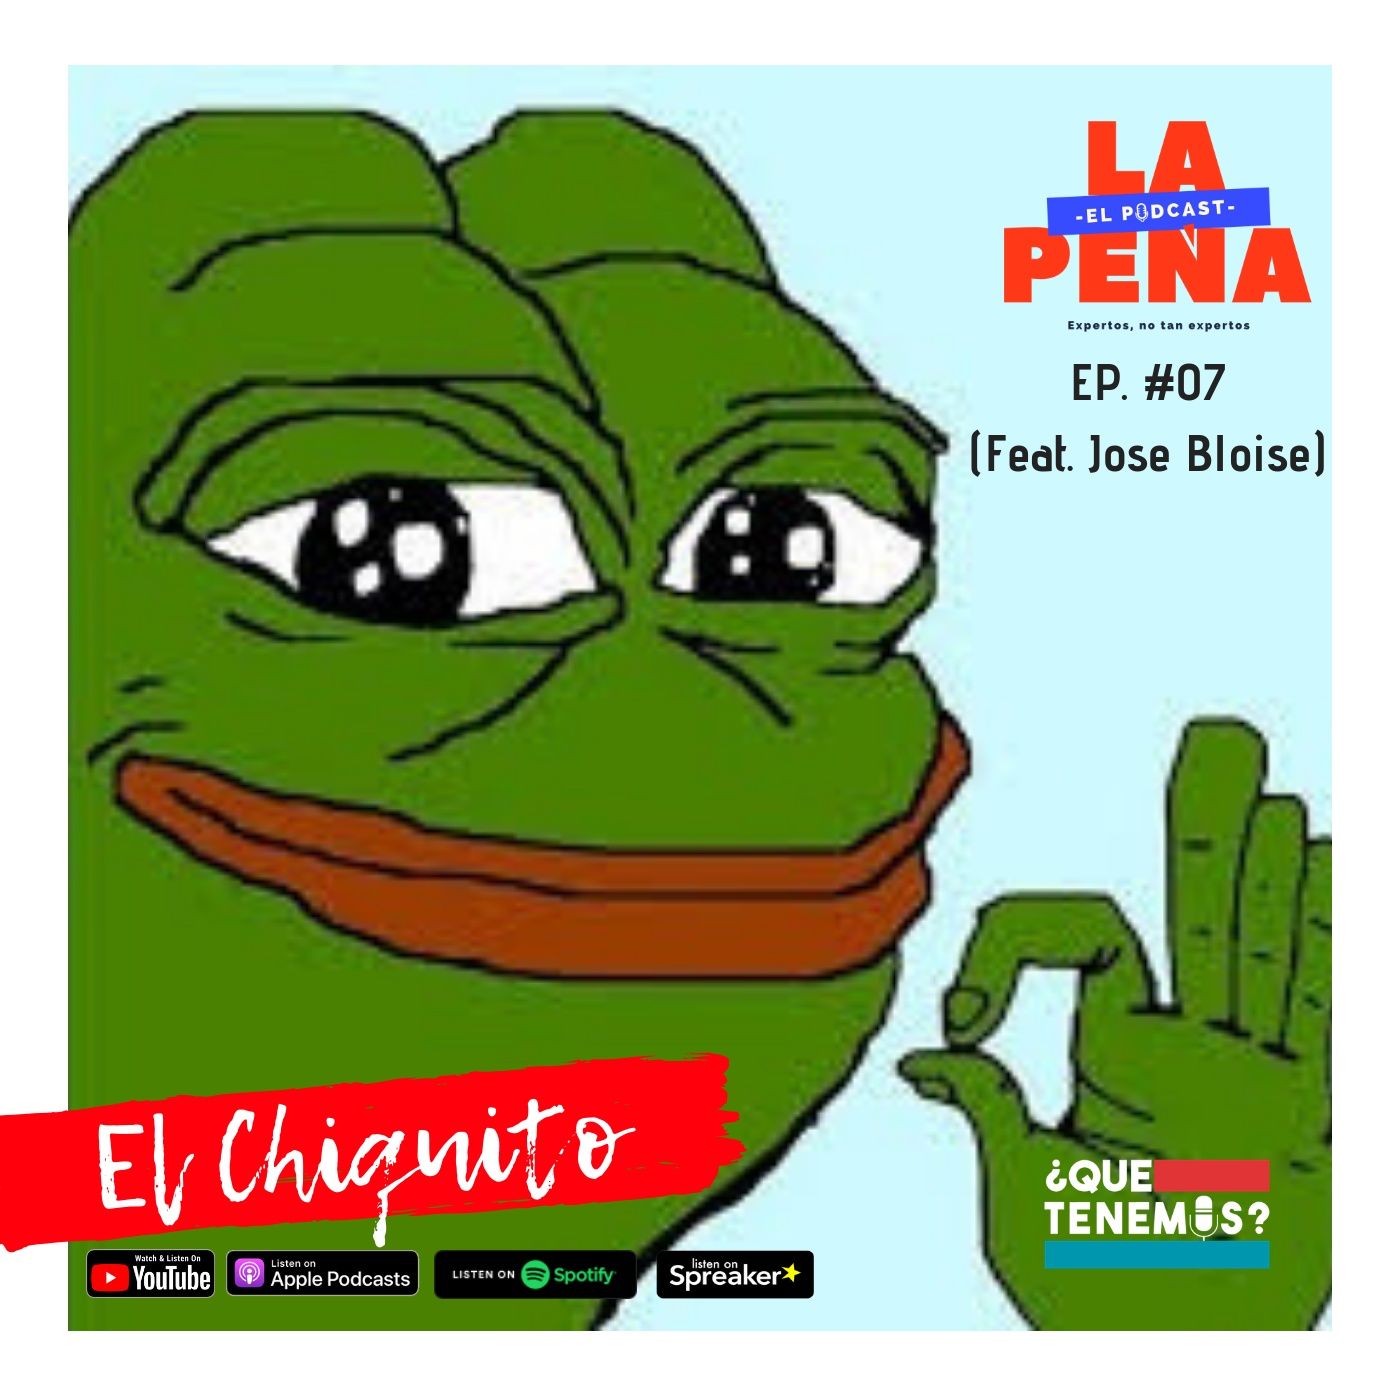 EP #07 - El Chiquito (Feat. Jose Bloise) - EL MEJOR PODCAST DE LA HISTORIA!